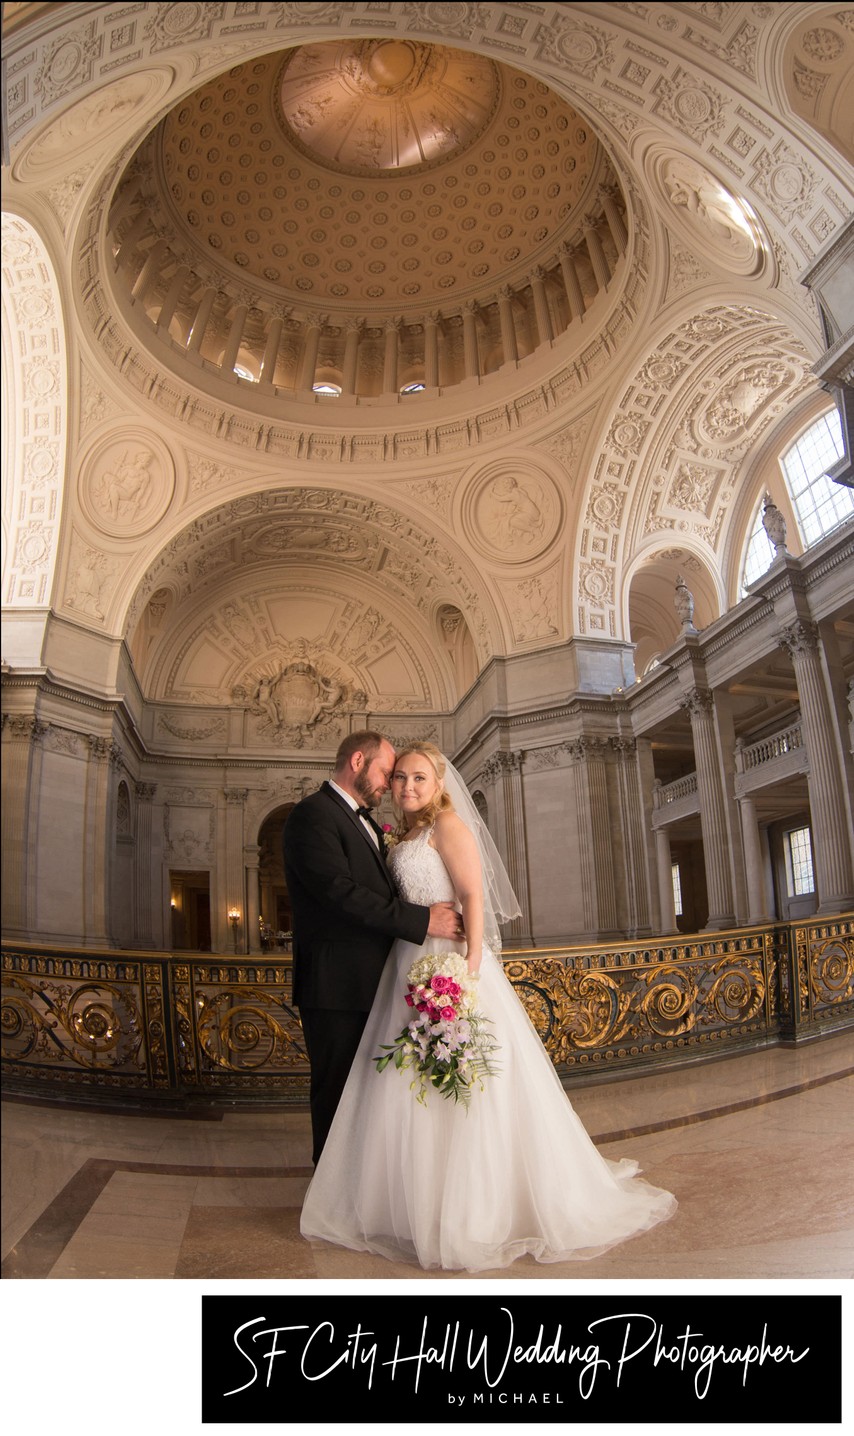 Wide Angle Wedding Photography SF City Hall Dome